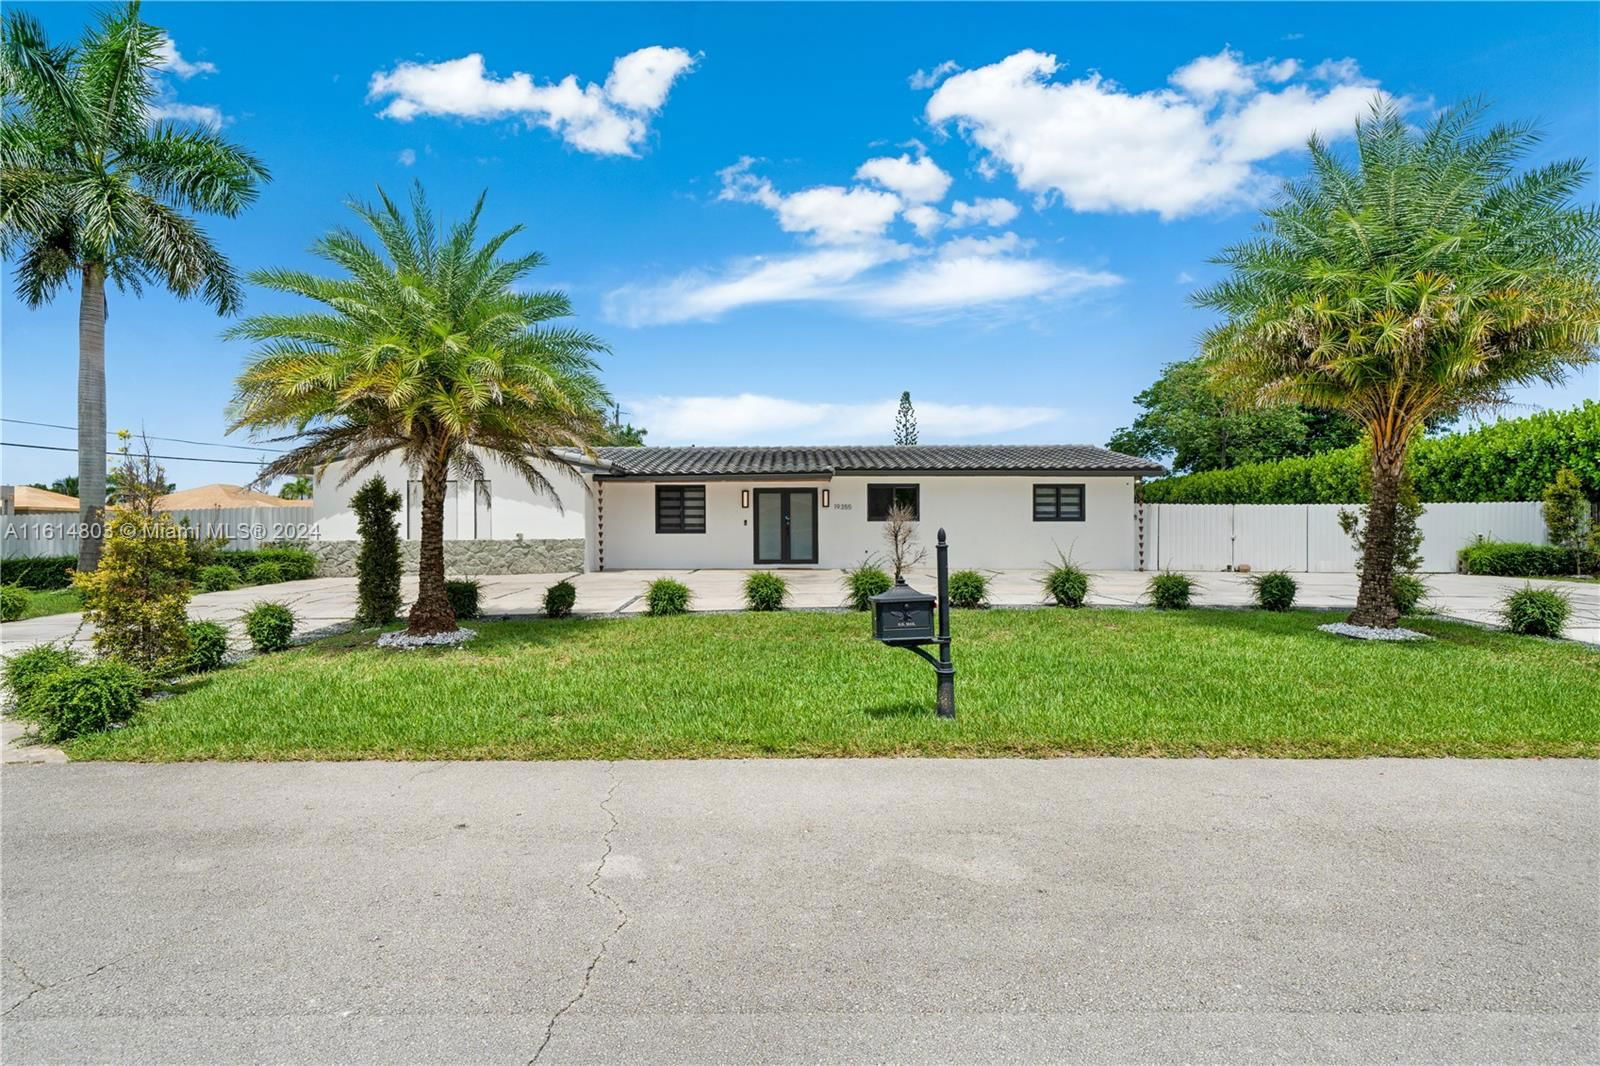 Real estate property located at 19355 127th Ct, Miami-Dade County, TROPICO ESTATES, Miami, FL